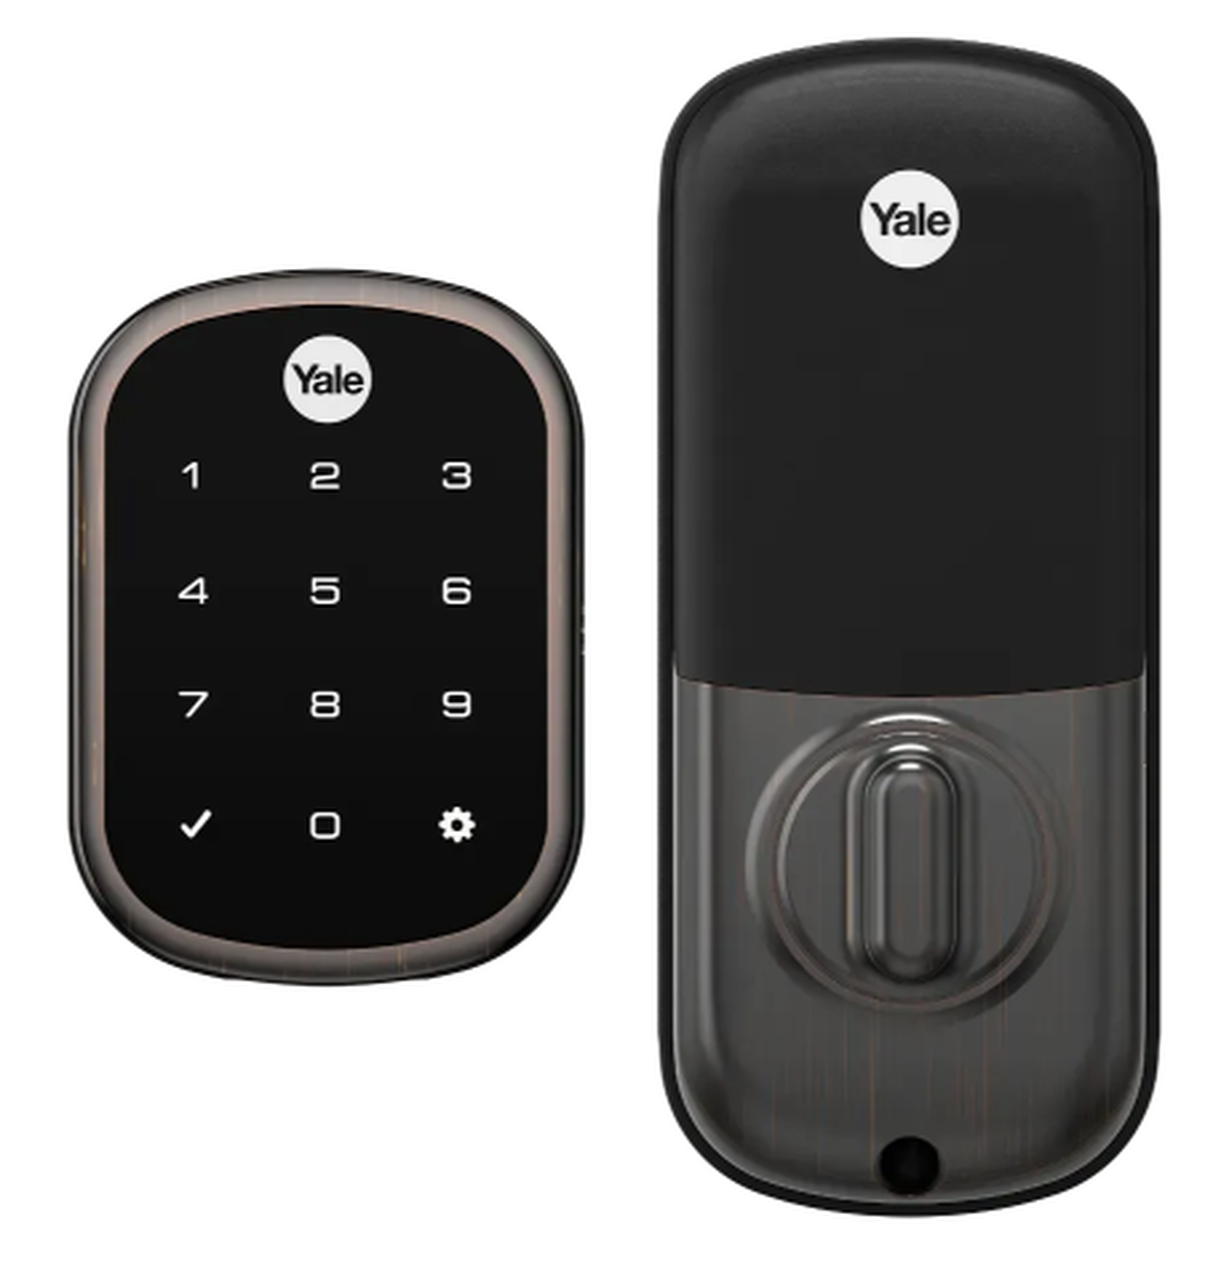 Khóa thông minh AAA là giải pháp an toàn và tiện lợi cho việc khóa cửa, giúp bạn bảo vệ ngôi nhà và gia đình mình. Với khả năng mở khóa bằng vân tay, mật khẩu hay chìa khóa cơ, bạn sẽ không phải lo lắng về việc để quên chìa khóa hay sợ vô ý thao tác làm mất chìa khóa. Xem thêm về khóa thông minh AAA trong hình ảnh liên quan để tìm hiểu thêm về tính năng và đặc điểm của nó.